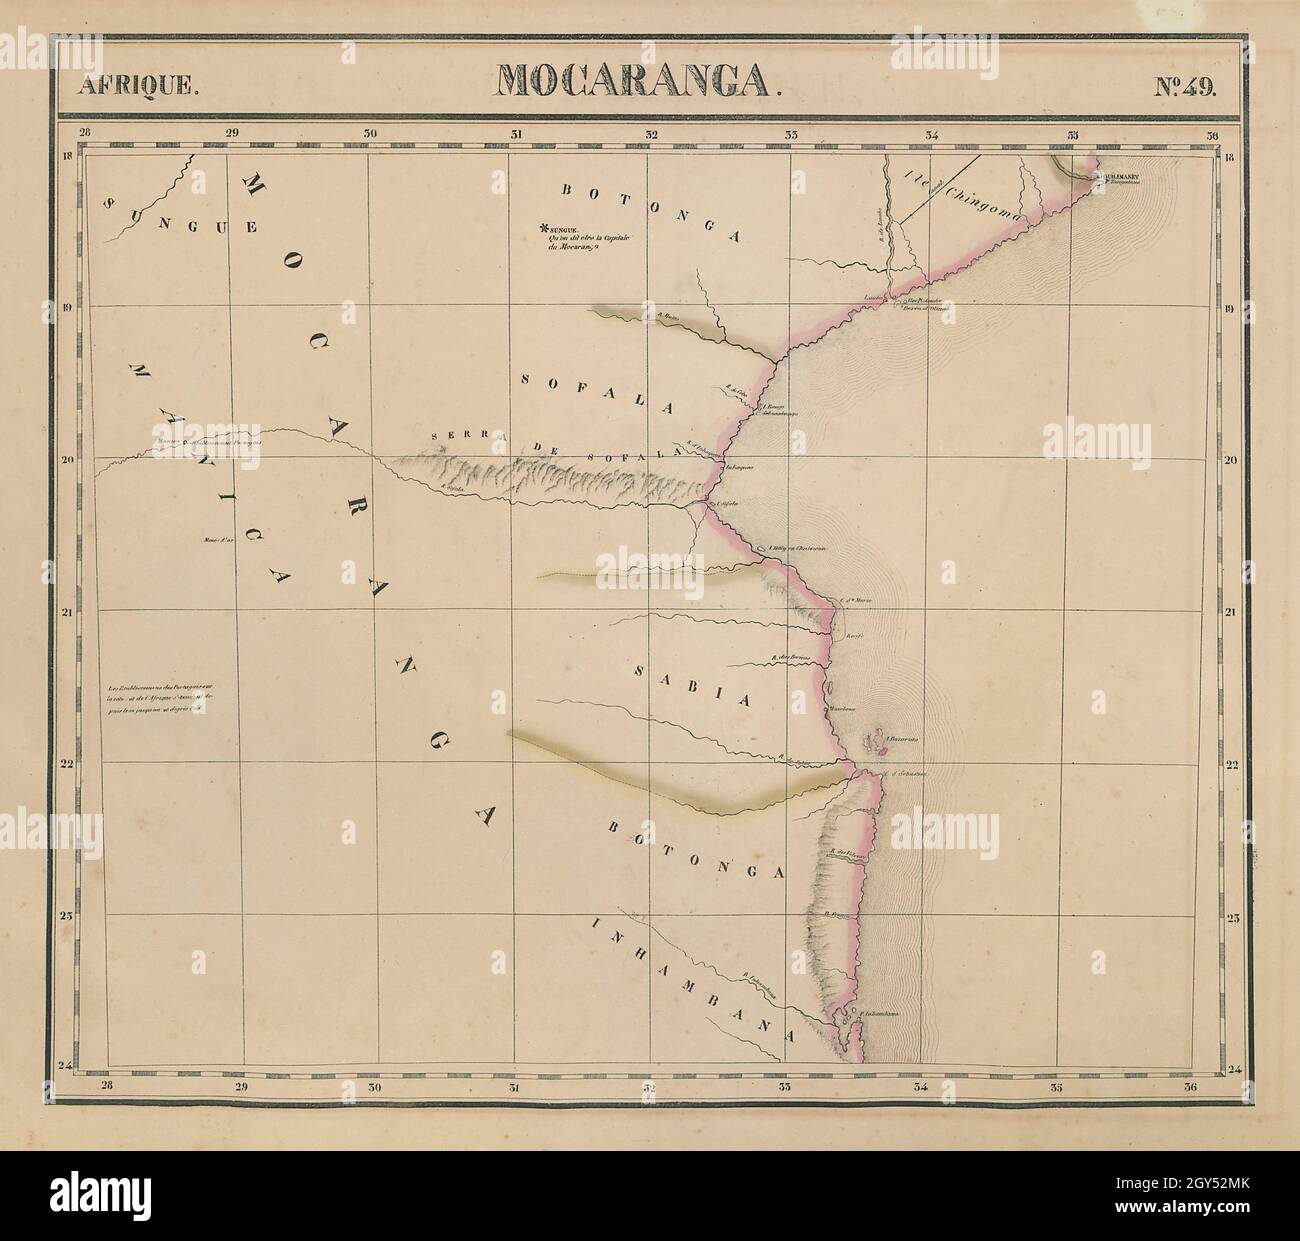 Afrique. Mocaranga #49 Costa meridionale del Mozambico. Mappa di Bazaruto VANDERMAELEN 1827 Foto Stock